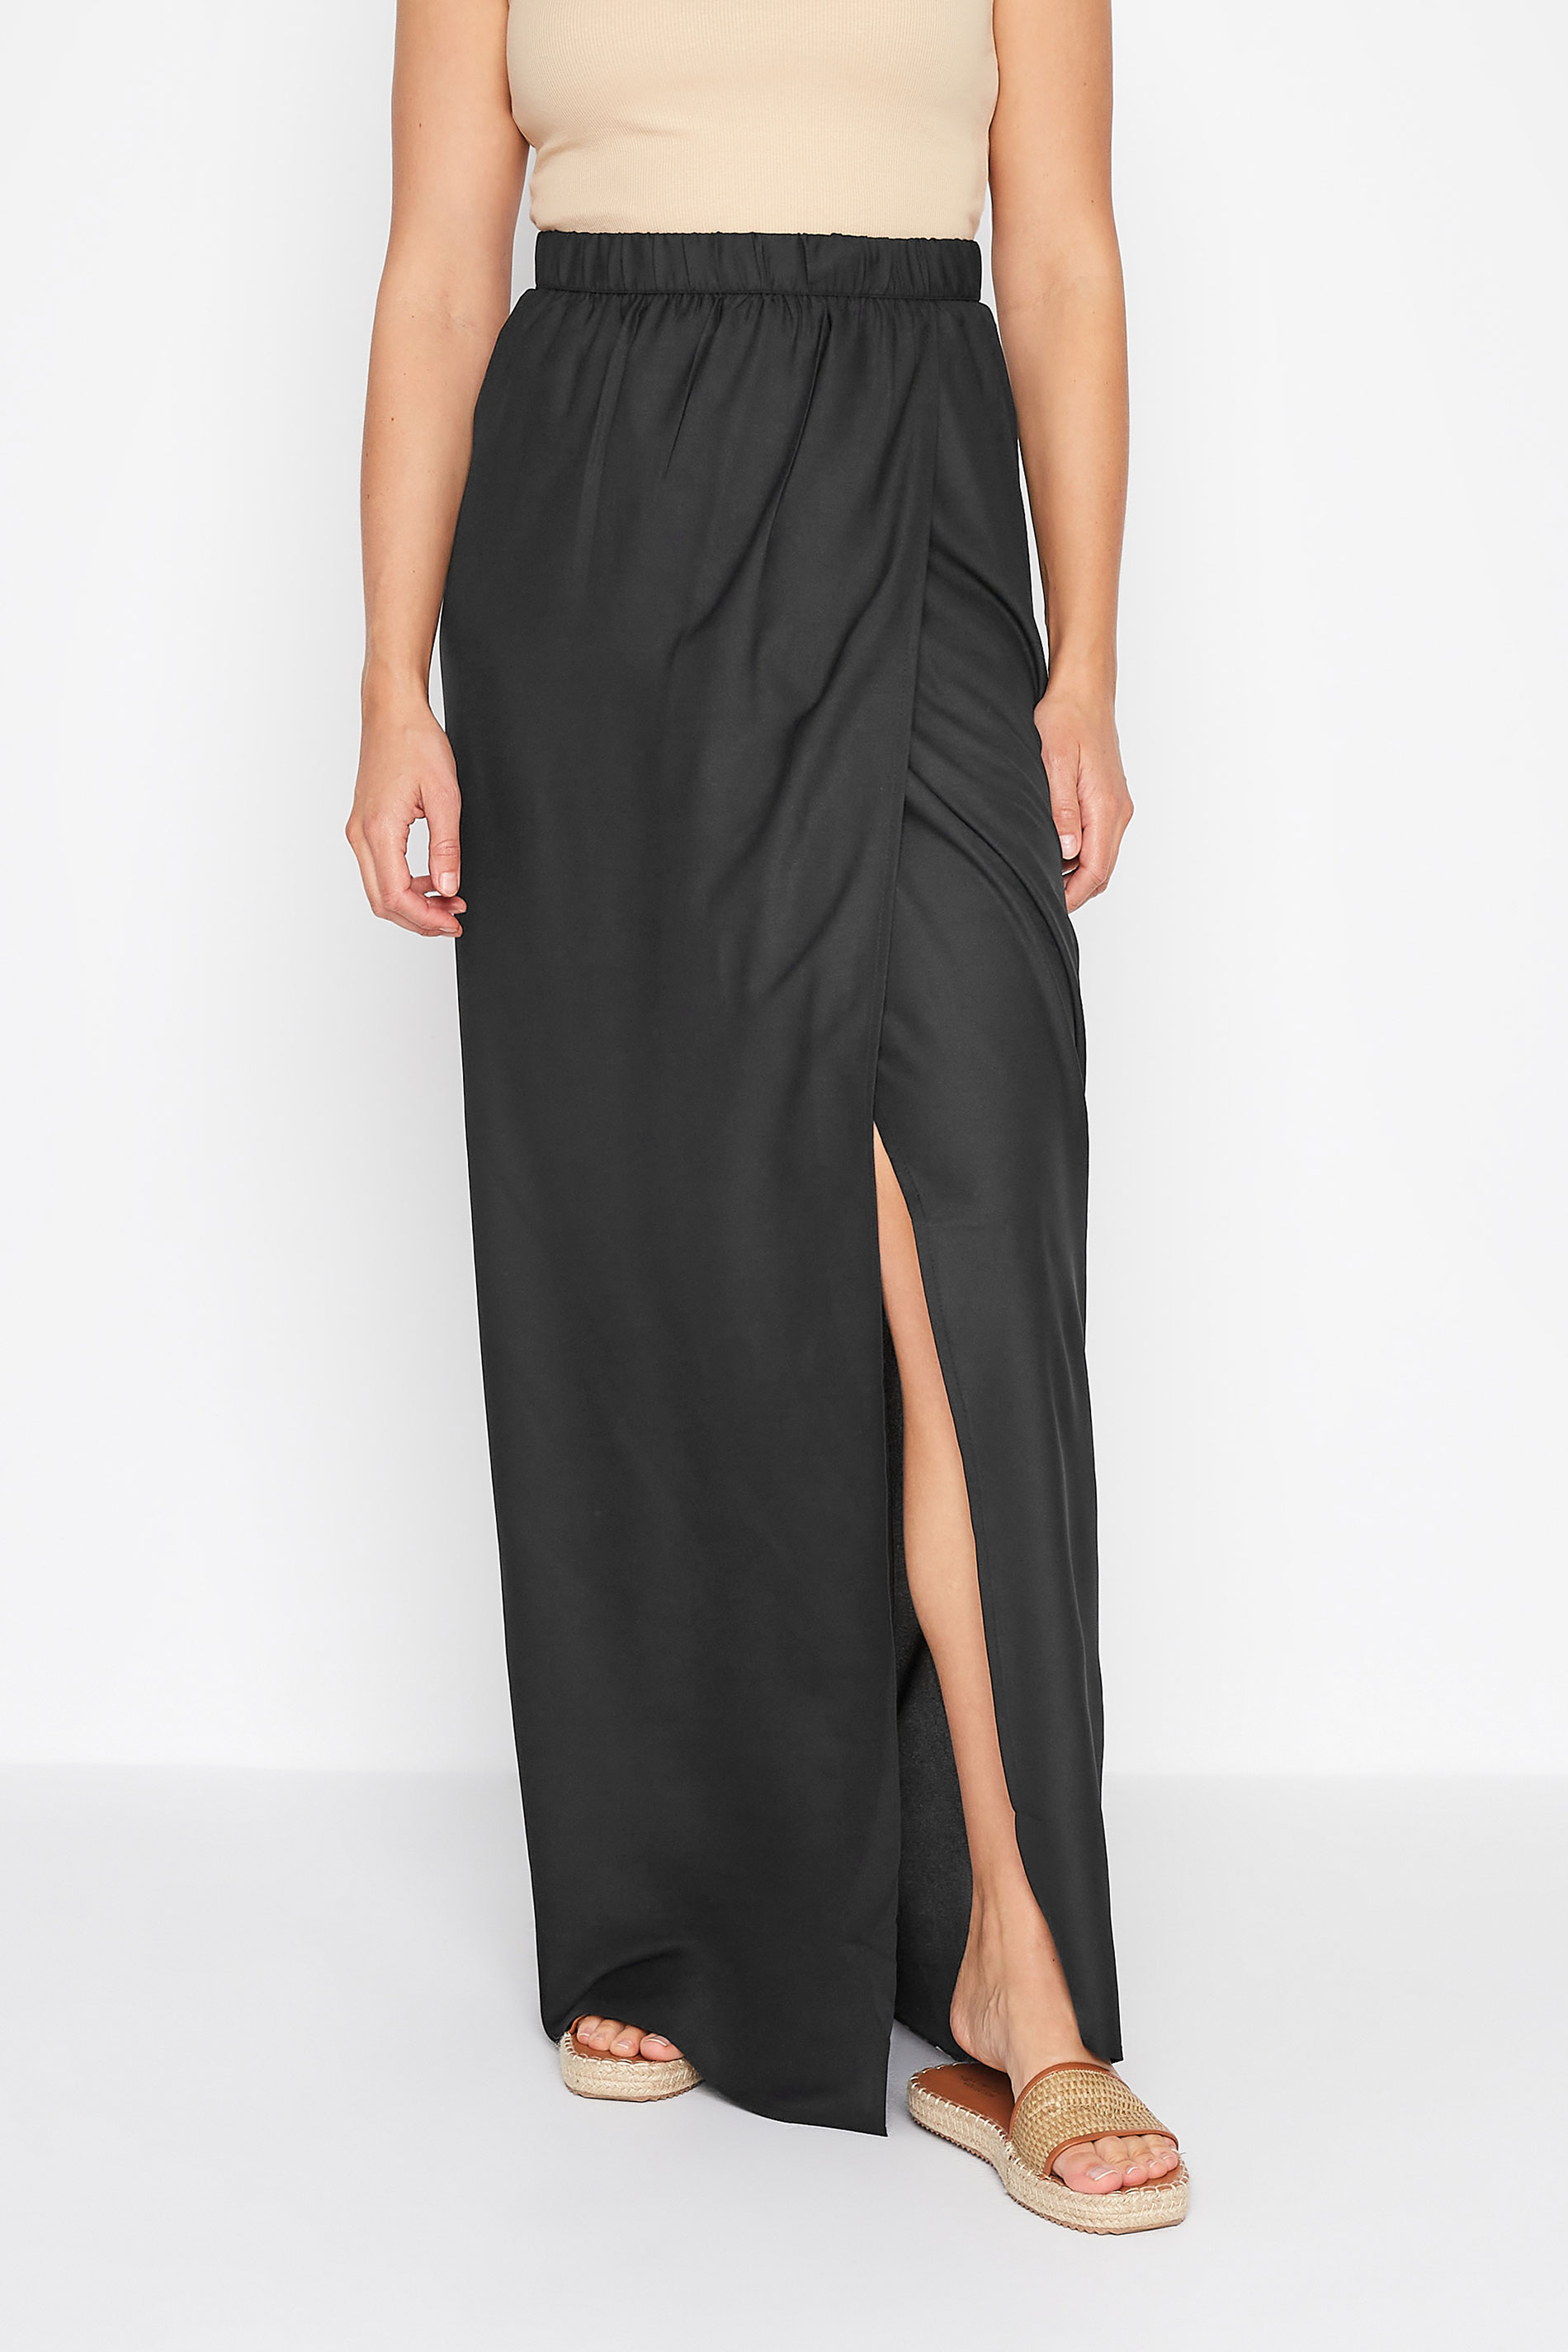 LTS Tall Women's Black Wrap Beach Skirt | Long Tall Sally 1